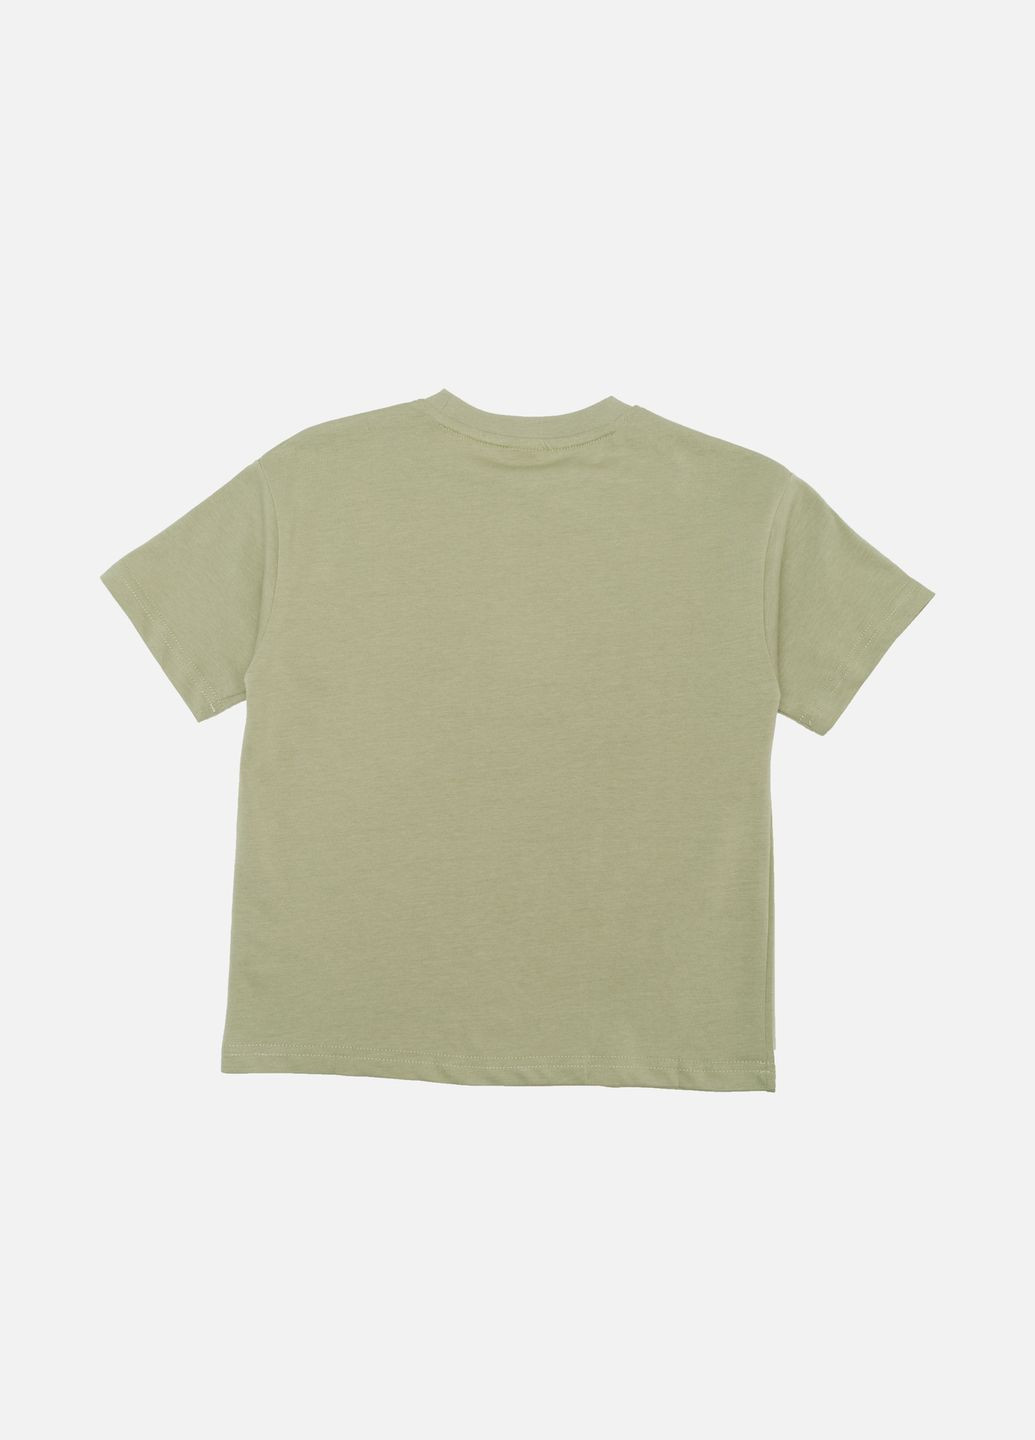 Оливкова літня футболка з коротким рукавом для хлопчика колір оливковий цб-00243552 Lizi Kids